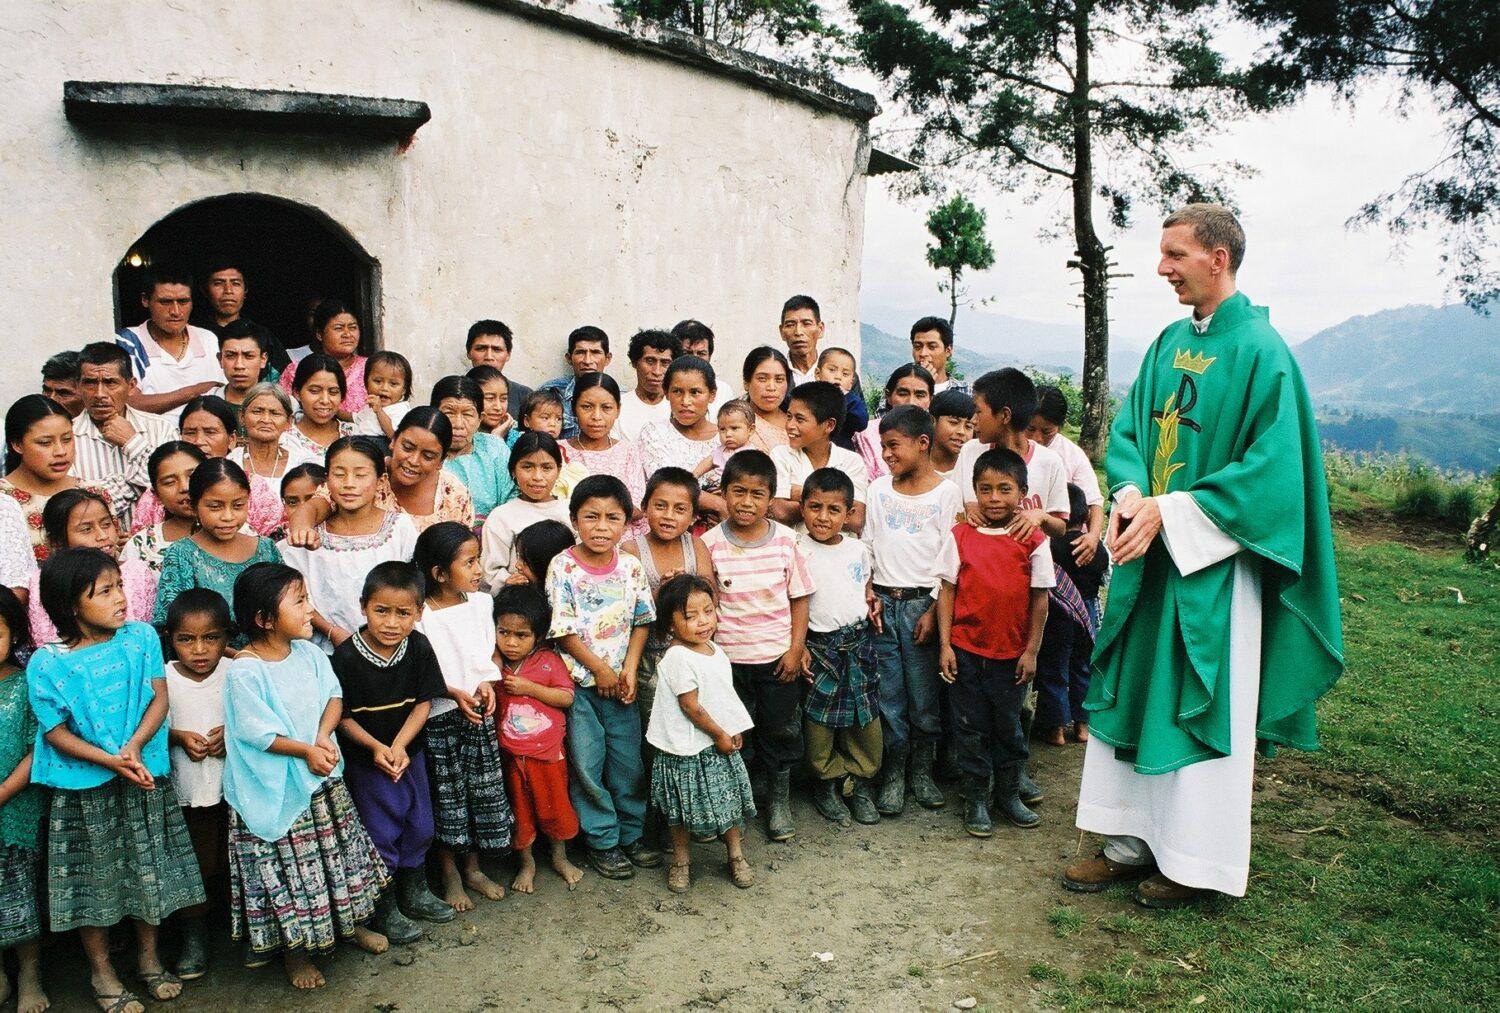 Misionár Peter Kučák: Nie je nič radostnejšie, ako keď sa hriešny človek pretvorí vďaka Božiemu milosrdenstvu